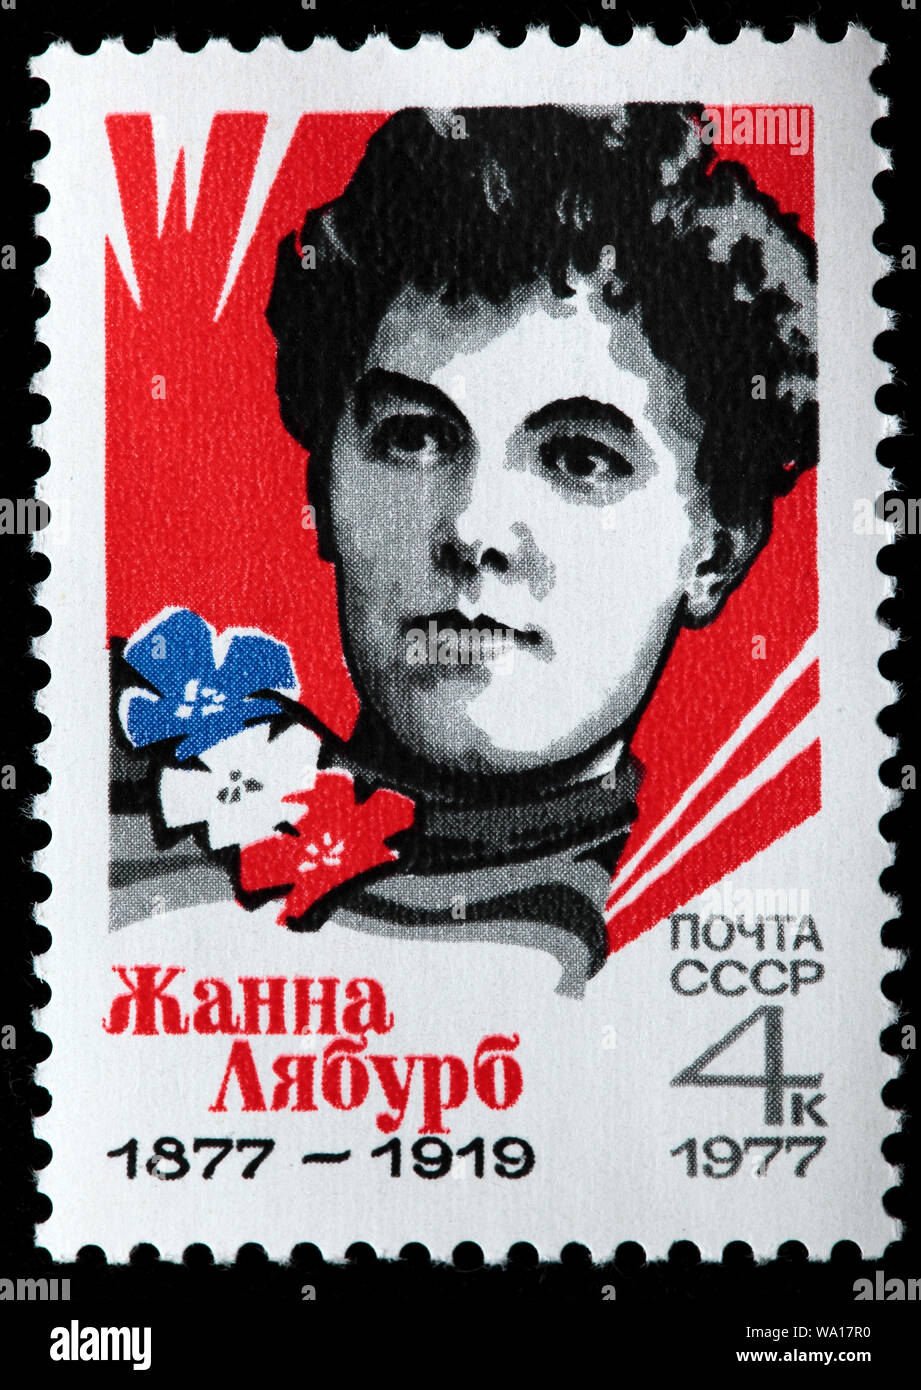 Centenaire de naissance de Jeanne Laborbe (1877-1919), français, Parti communiste bolchevique, activiste, timbre-poste, Russie, URSS, 1977 Banque D'Images